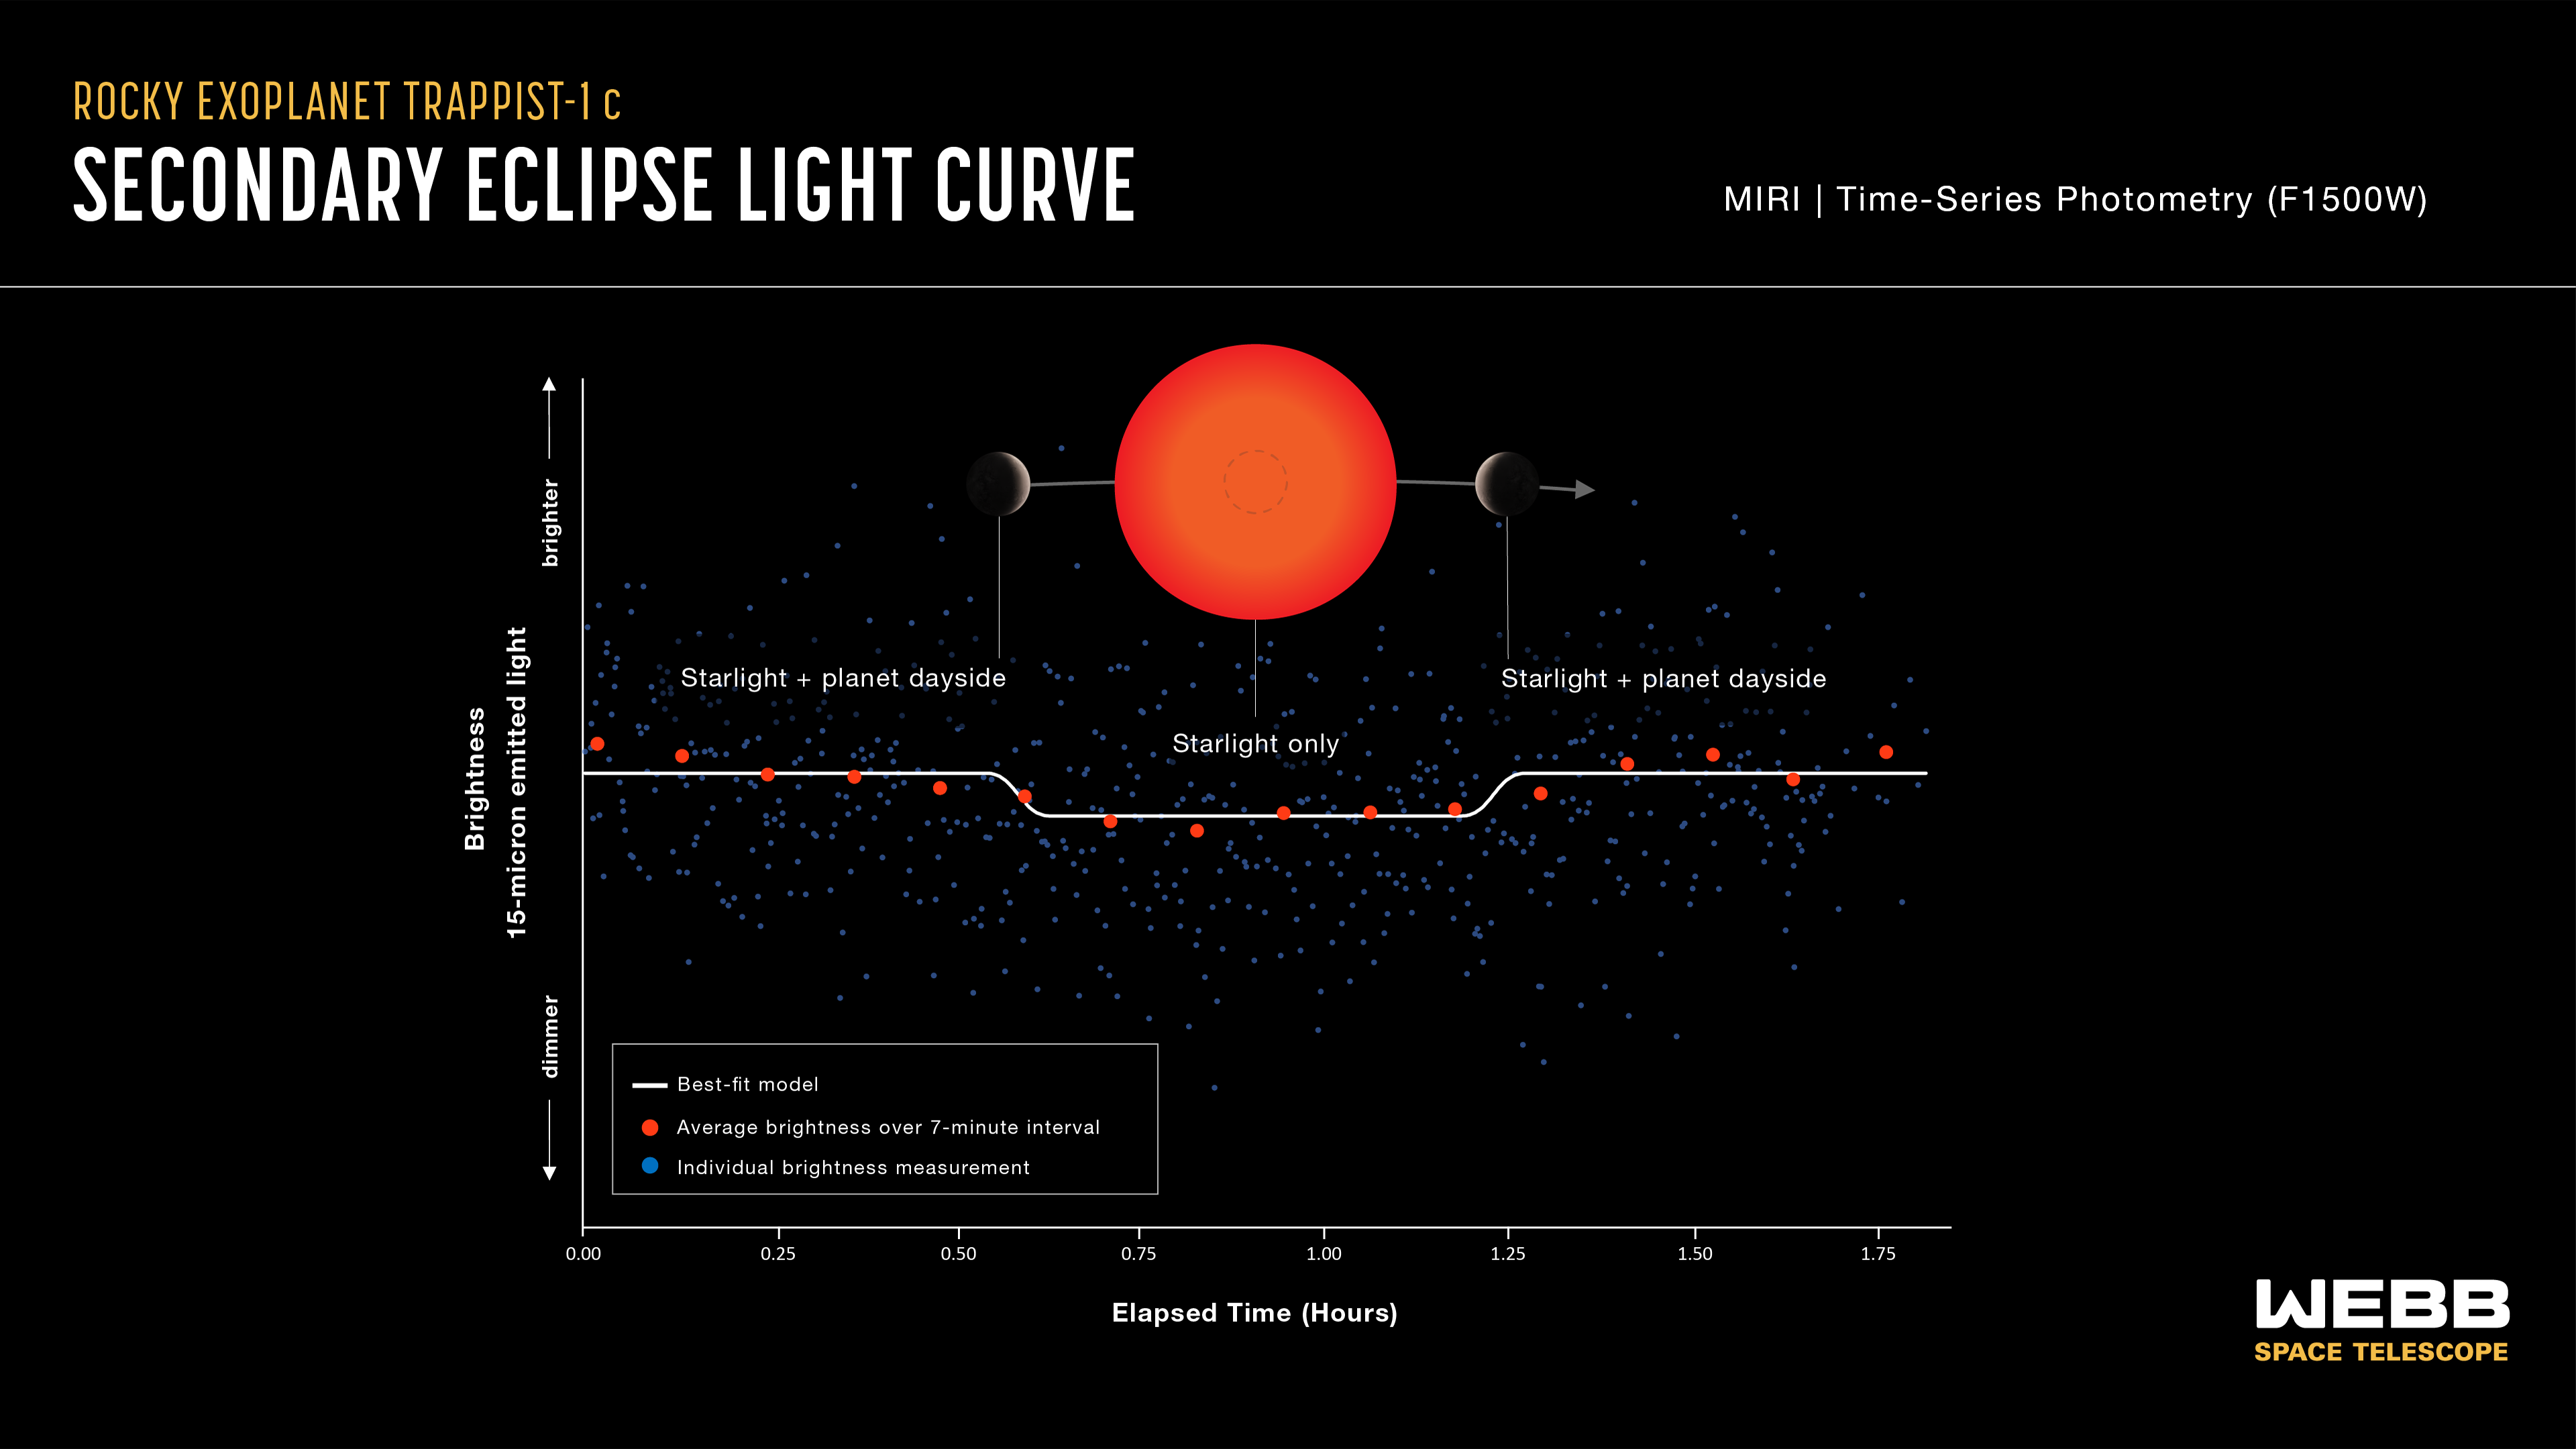 Krzywa blasku z zaćmienia drugiej planety w układzie planetarnym TRAPPIST-1. Jest to zaćmienie wtórne, gdy egzoplaneta TRAPPIST-1 c chowa się za gwiazdę macierzystą. Zaćmienie obserwowano za pomocą Teleskopu Webba współpracującego z kamerą MIRI w średniej podczerwieni (filtr F1500W: 13,5-16,7μm). Gdy egzoplaneta jest obok gwiazdy, to wtedy zarówno światło pochodzące od dziennej strony egzoplanety jak i gwiazdy dociera do teleskopu (rysunek→„starlight+planet dayside”), i jasność sumaryczna układu jest większa. Natomiast, gdy egzoplaneta schowa się za gwiazdę, to wtedy do obserwatora dociera tylko światło gwiazdy (rysunek→„starlight only”) i jasność sumaryczna układu spada. Astronomowie potrafią wyliczyć ile energii w podczerwieni pochodzi od dziennej strony egzoplanety na podstawie jasności w różnych fazach zaćmienia. Pozwala to  obliczyć temperaturę dziennej strony egzoplanety, jak również określić możliwy skład chemiczny jej atmosfery. Dla TRAPPIST-1 c wyznaczono +103°C –co jest do tej pory najmniejszą wartością uzyskaną metodą tranzytu wtórnego dla planety skalistej. Dane obserwacyjne na krzywej blasku oznaczono niebieskimi kwadracikami, wartości uśrednione - czerwonymi kółkami, zaś biała linia reprezentuje najlepiej dopasowaną krzywą blasku do danych obserwacyjnych. Podczas tego zaćmienia wtórnego nastąpił spadek jasności mniejszy niż 0,05%. Źródło: NASA, ESA, CSA, J. Olmsted (STScI), S. Zieba (MPI-A), L. Kreidberg (MPI-A)